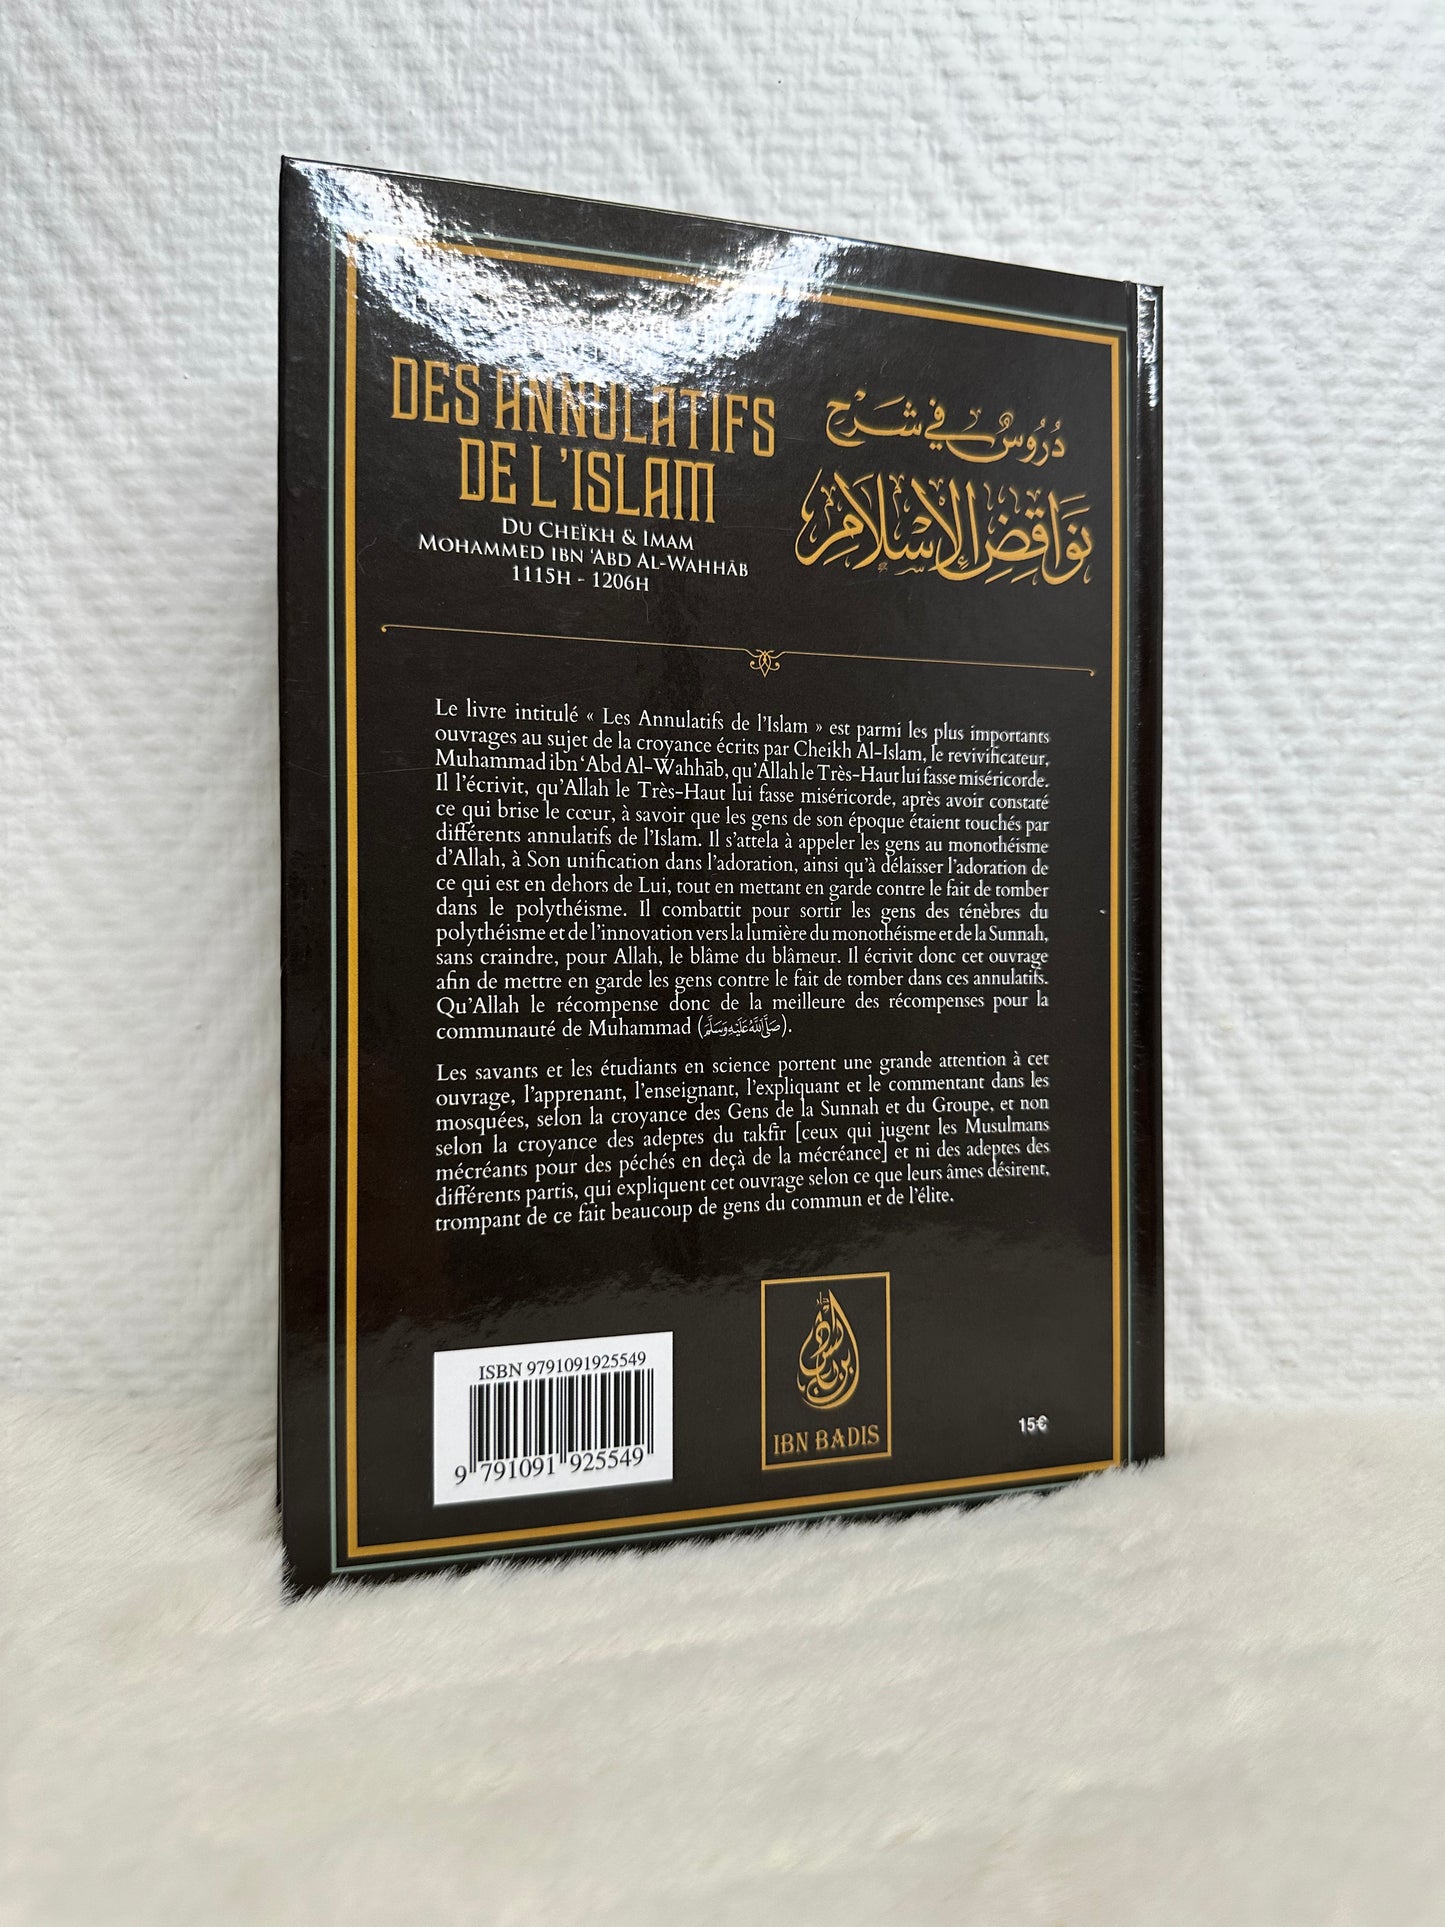 Leçons dans l'explication de l'épître Des annulatifs de l'Islam de Muhammad Ibn Abd Al-Wahhab, par Salih al Fawzan ibn al Fawzan